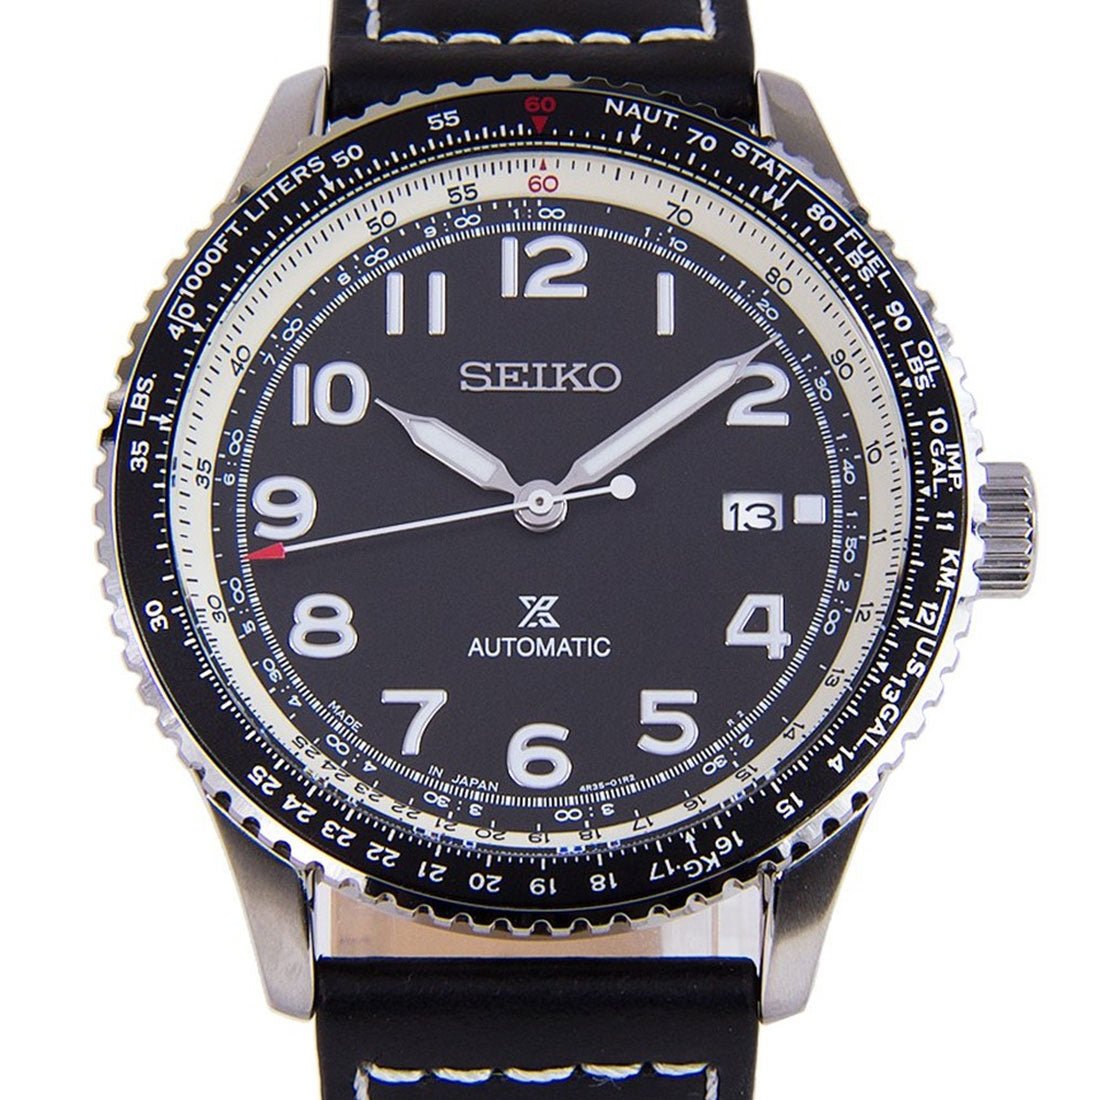 Seiko Prospex Made in Japan Watch SRPB61 SRPB61J SRPB61J1 -Seiko